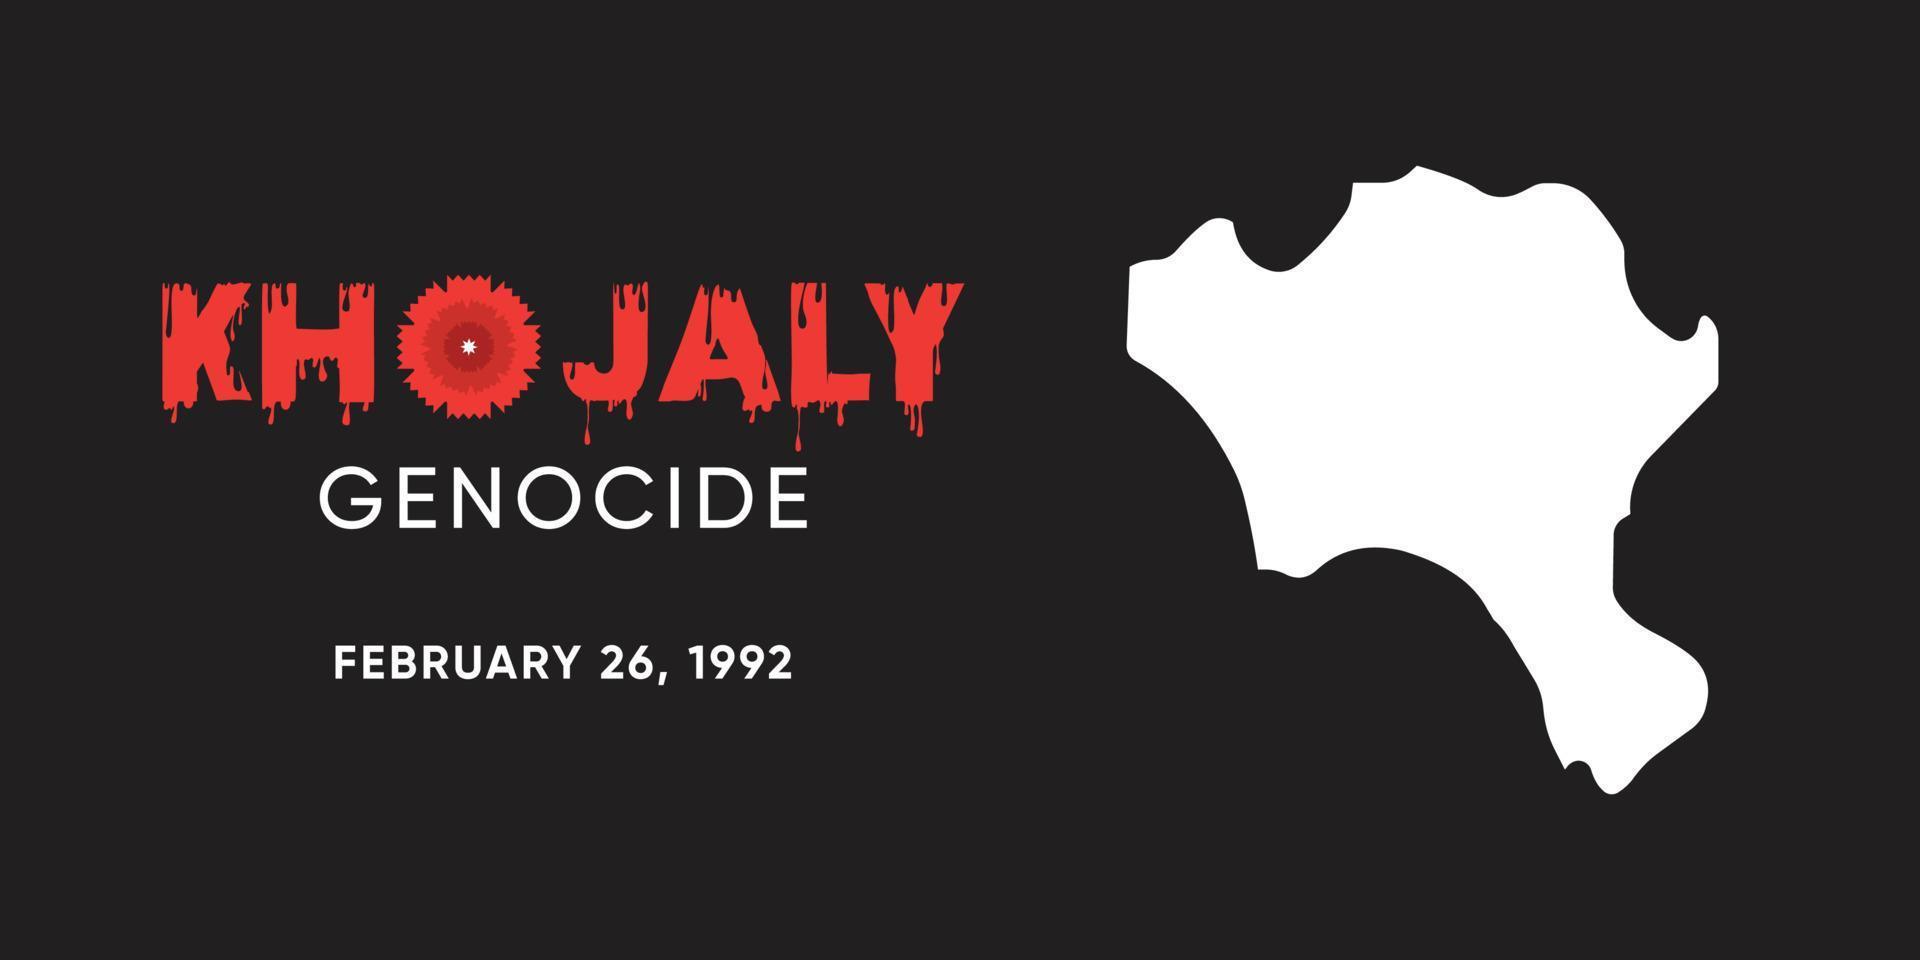 khojaly génocide février 26, 1992. affiche pour le Mémoire de le azerbaïdjanais personnes. vecteur